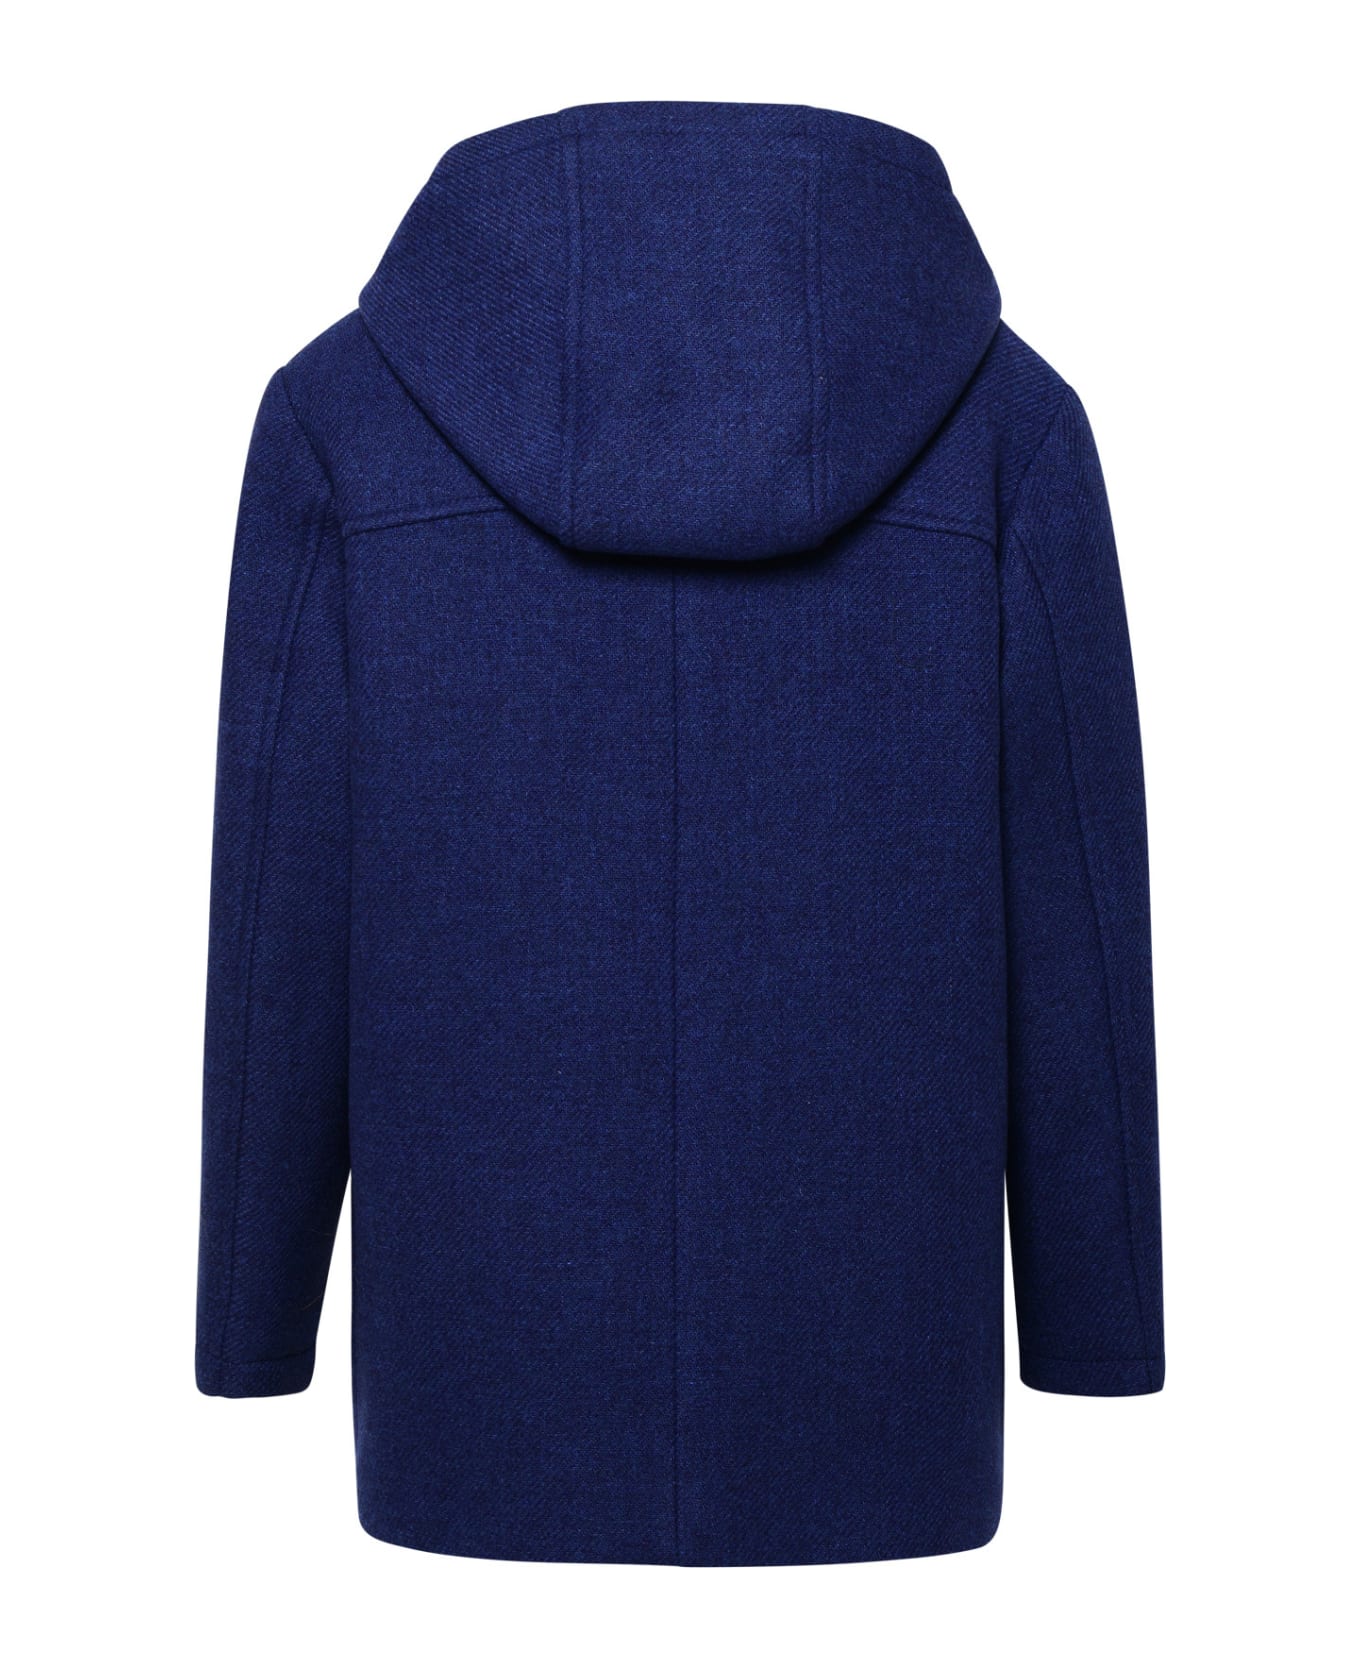 Versace Blue Wool Coat - Navy